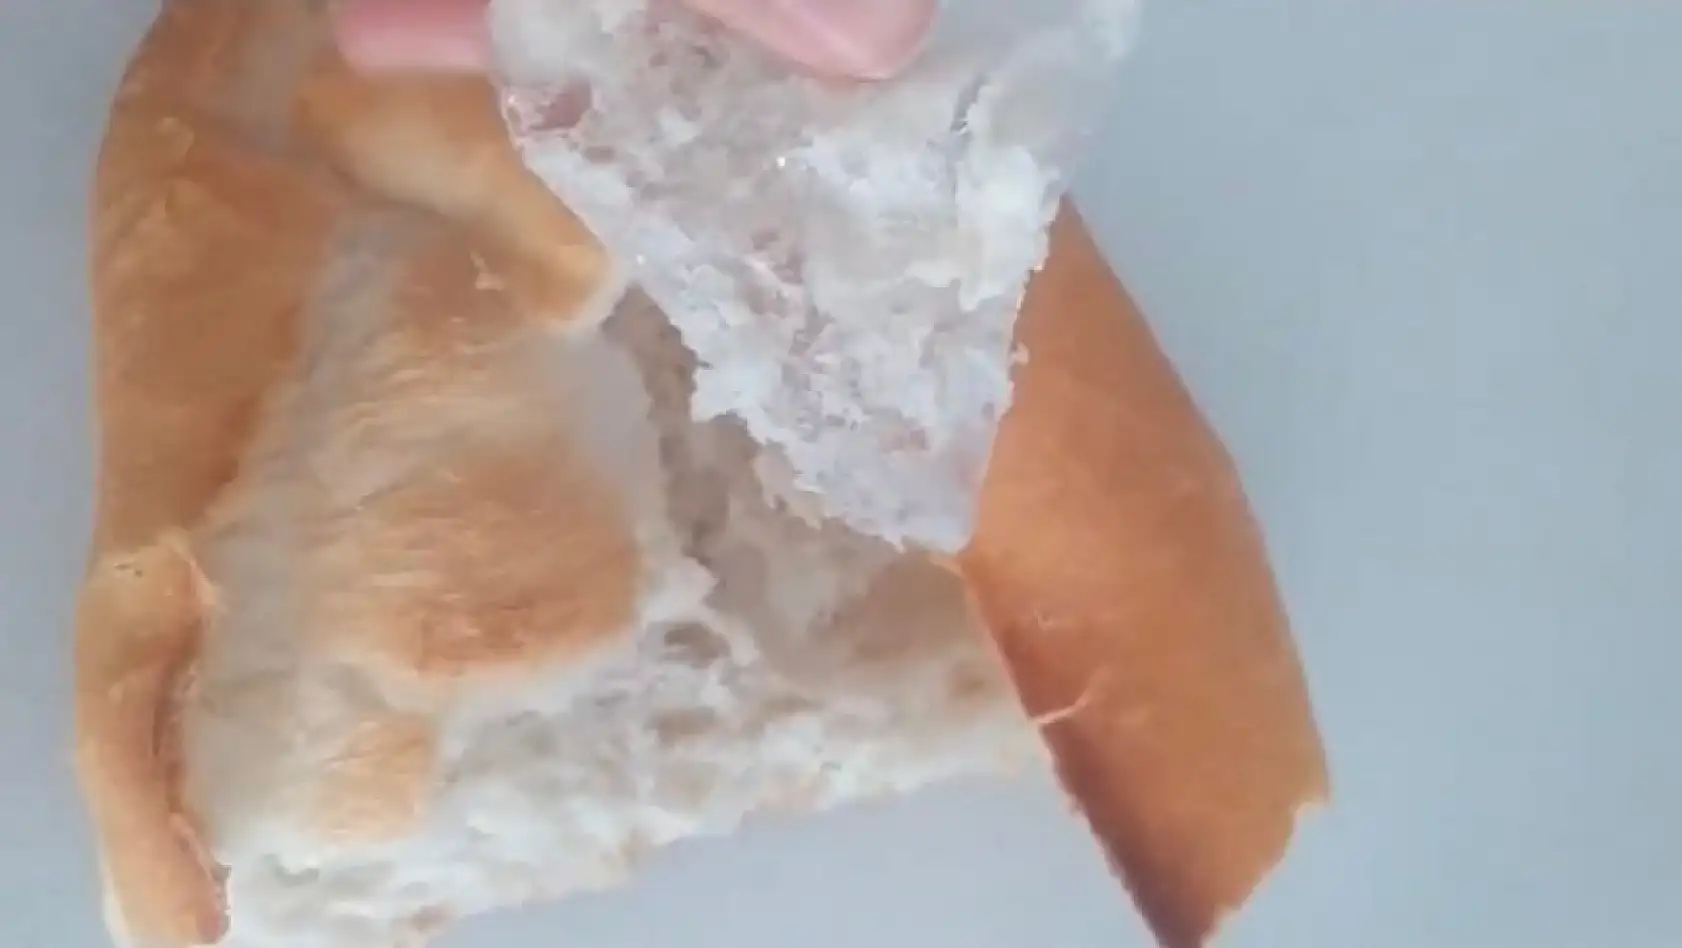 Bakın ekmeğin içinden ne çıktı?